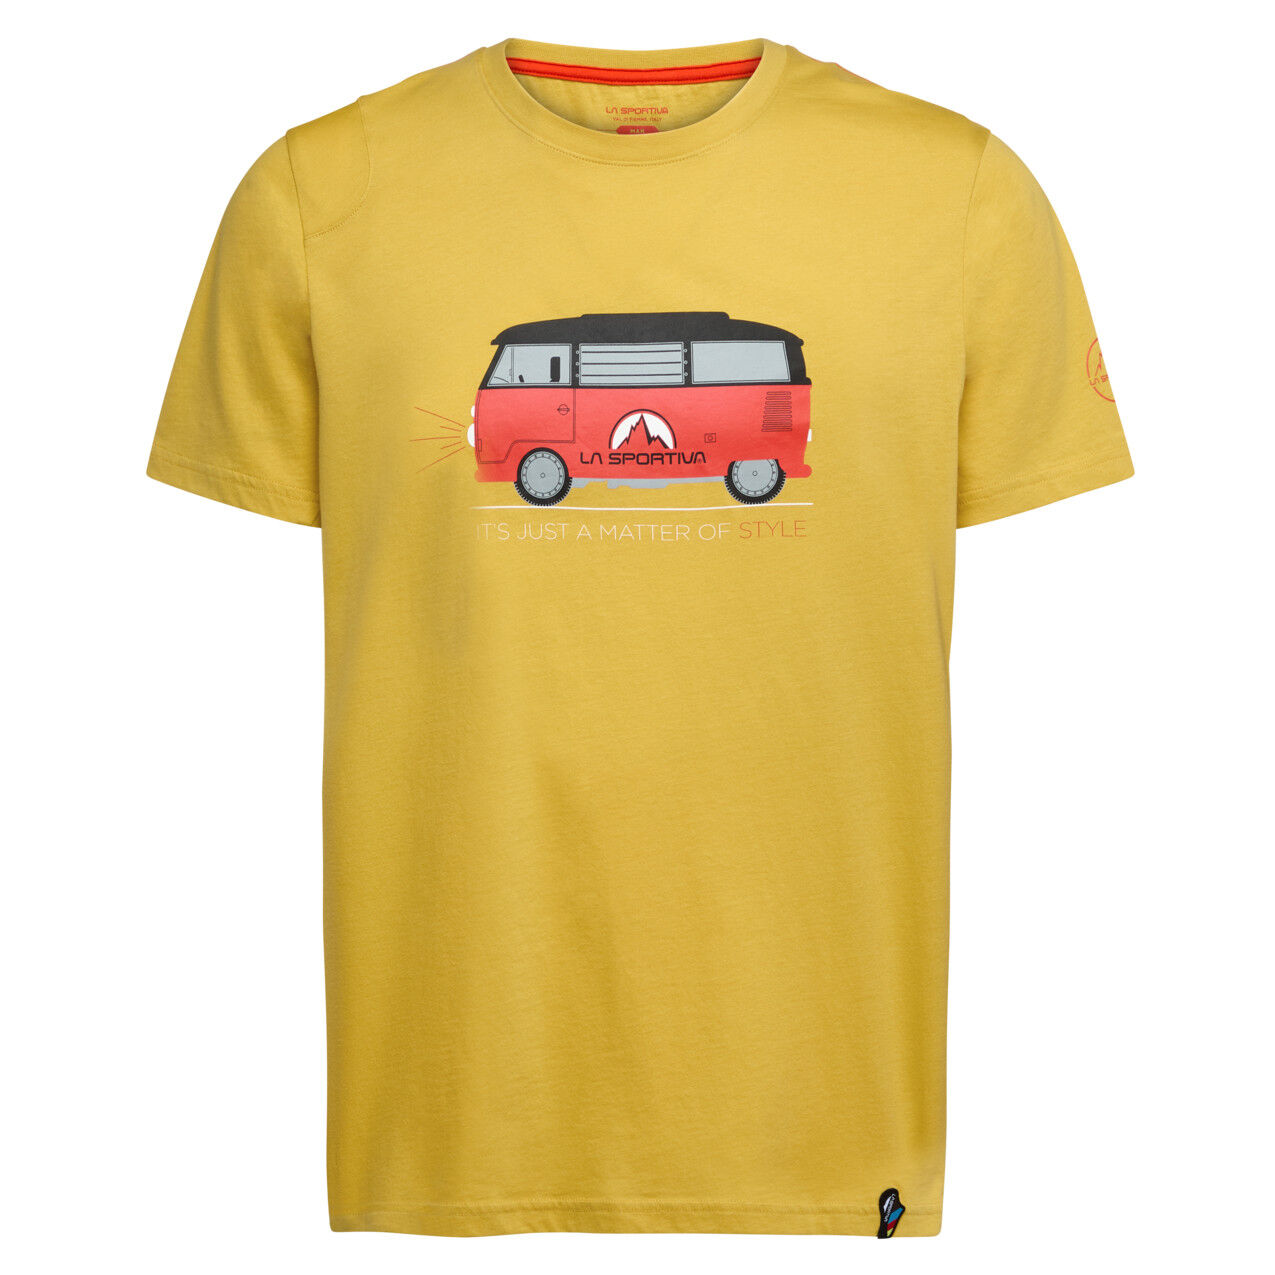 La Sportiva Van T-Shirt - T-shirt - Men's